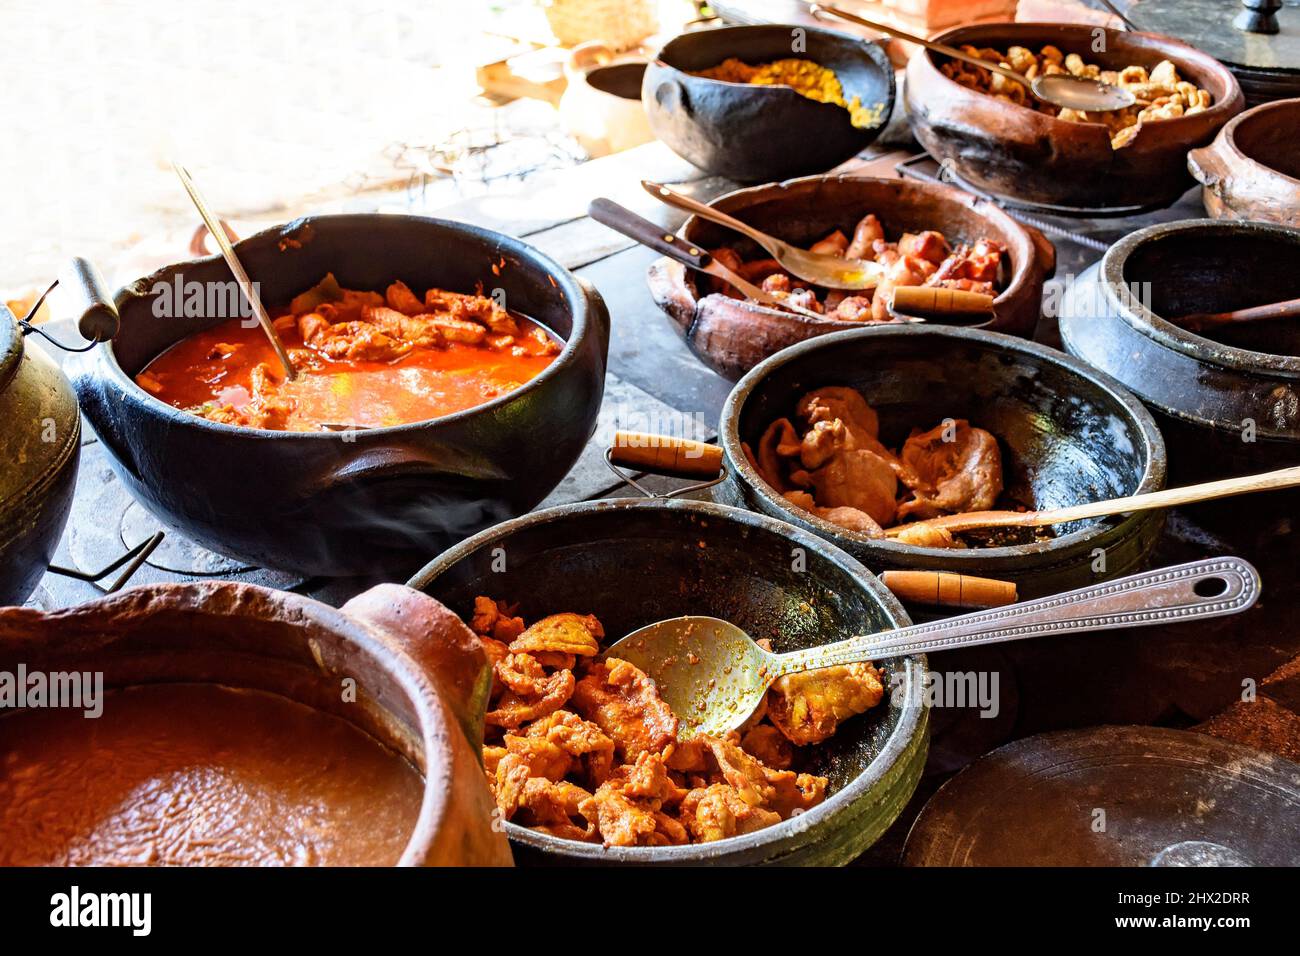 Traditionelle brasilianische Gerichte aus der Region vor Minas Gerais werden in Tontöpfen und im alten und beliebten Holzofen zubereitet. Stockfoto